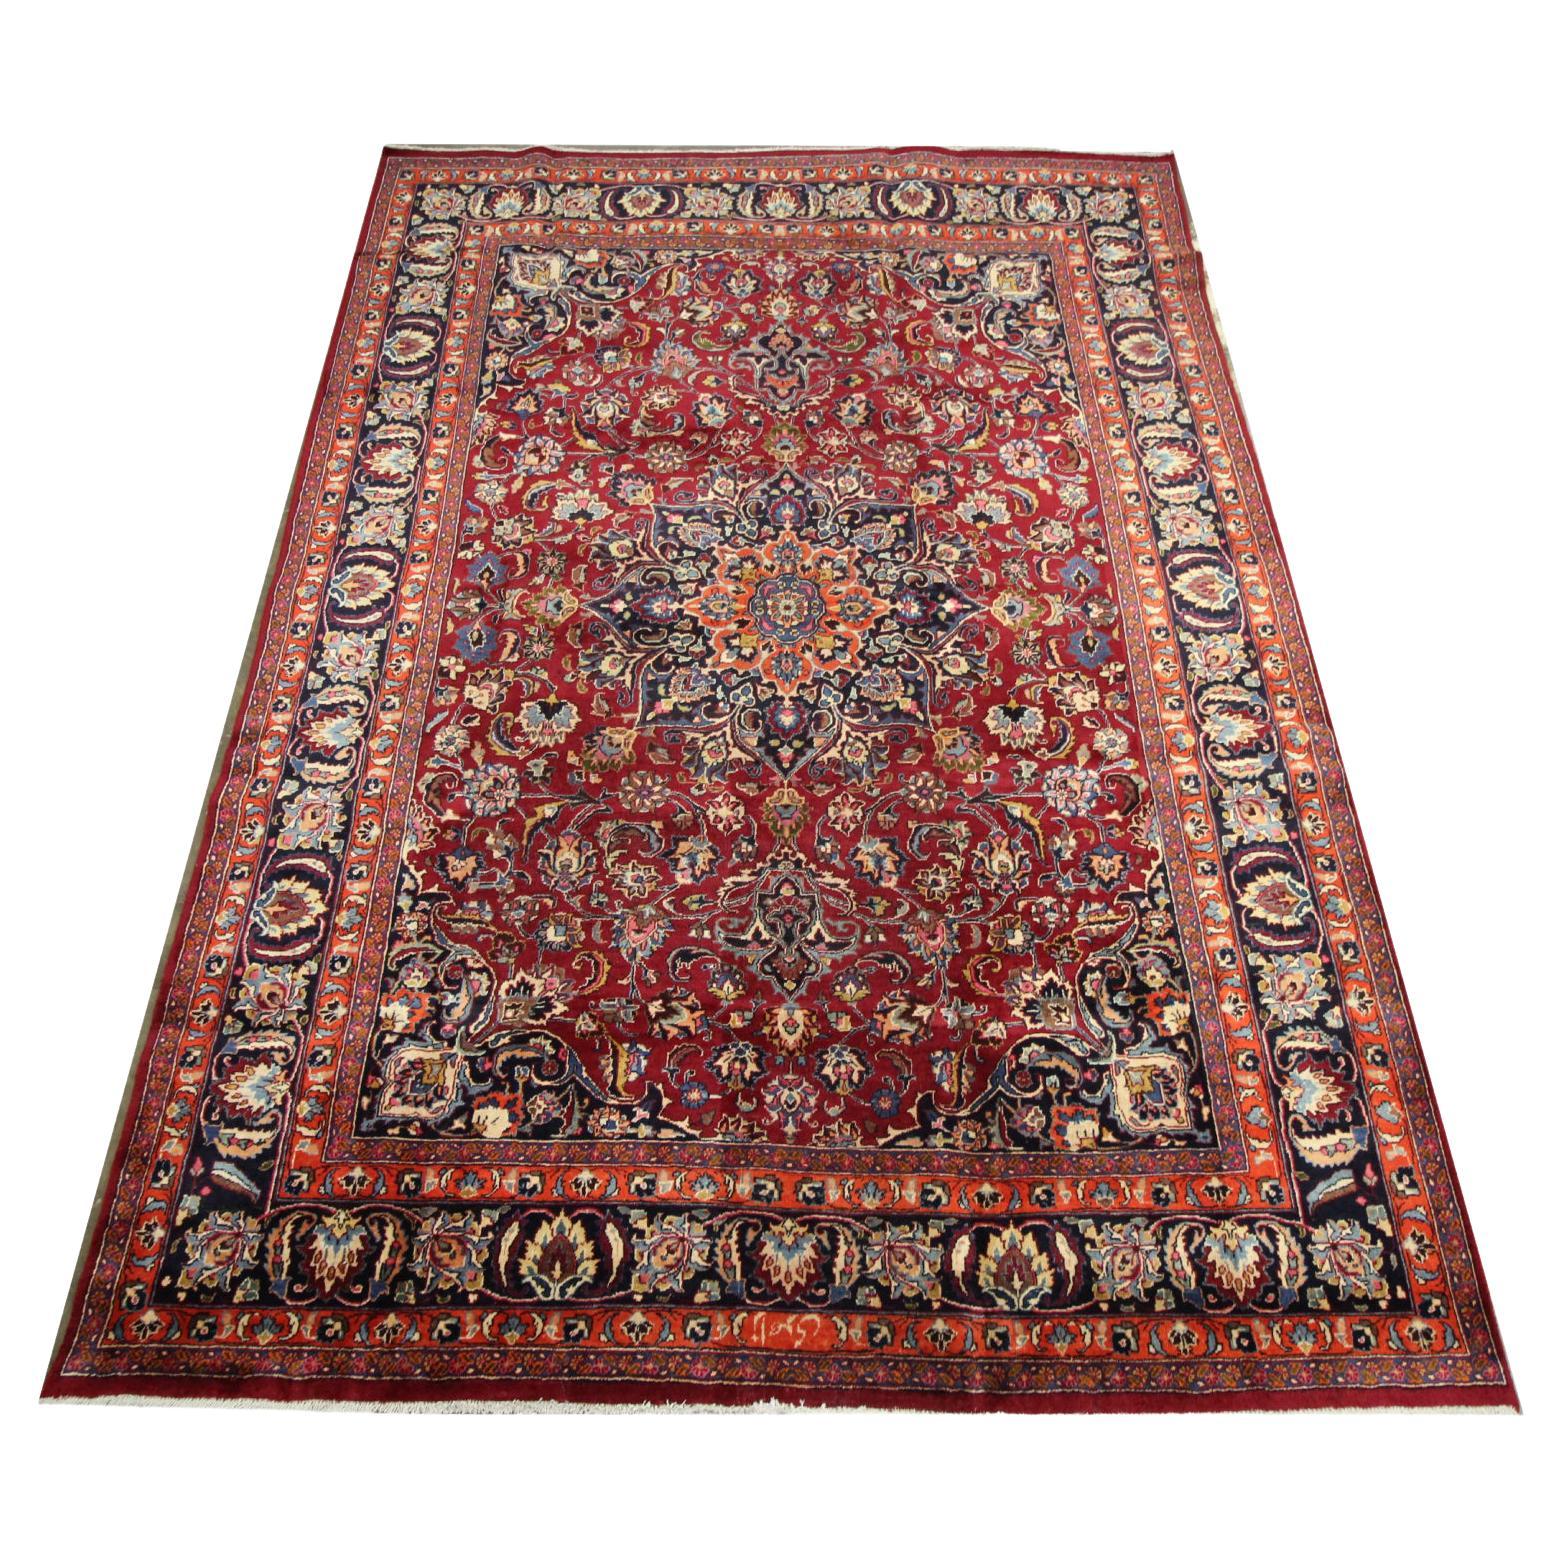 Vintage Rug Knotted Pile Carpet Turkish Handmade Oriental Wool Rug